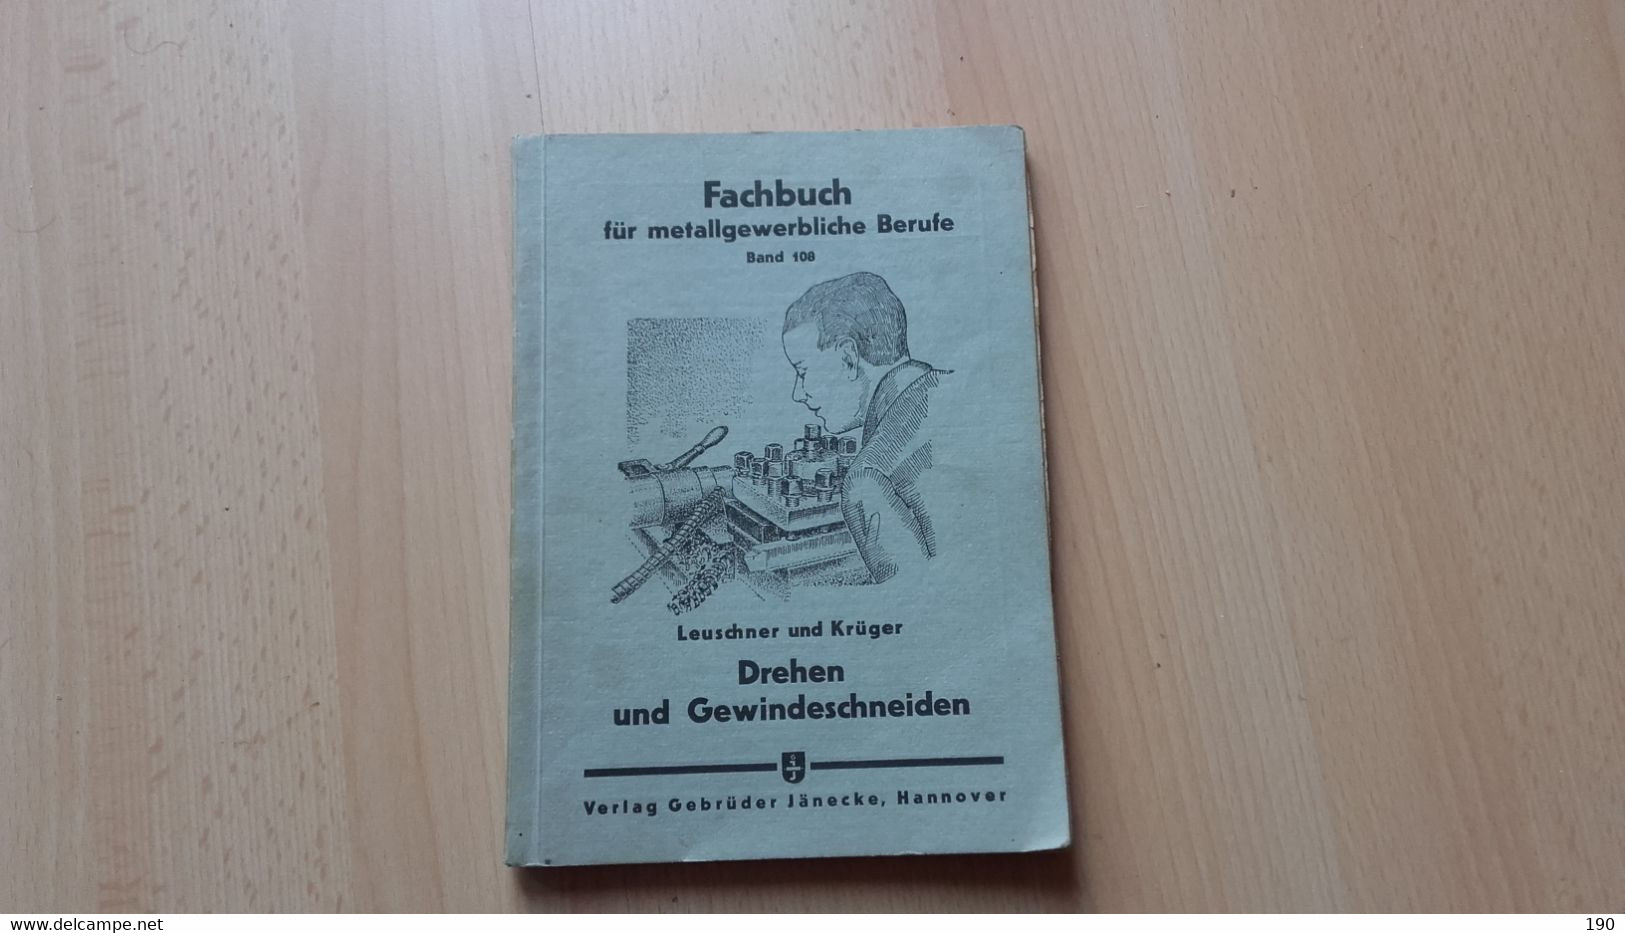 Fachbuch Fur Metallgewerbliche Berufe.Band 108.Leuschner Und Kruger.Drehen Und Gewindeschneiden - Technical